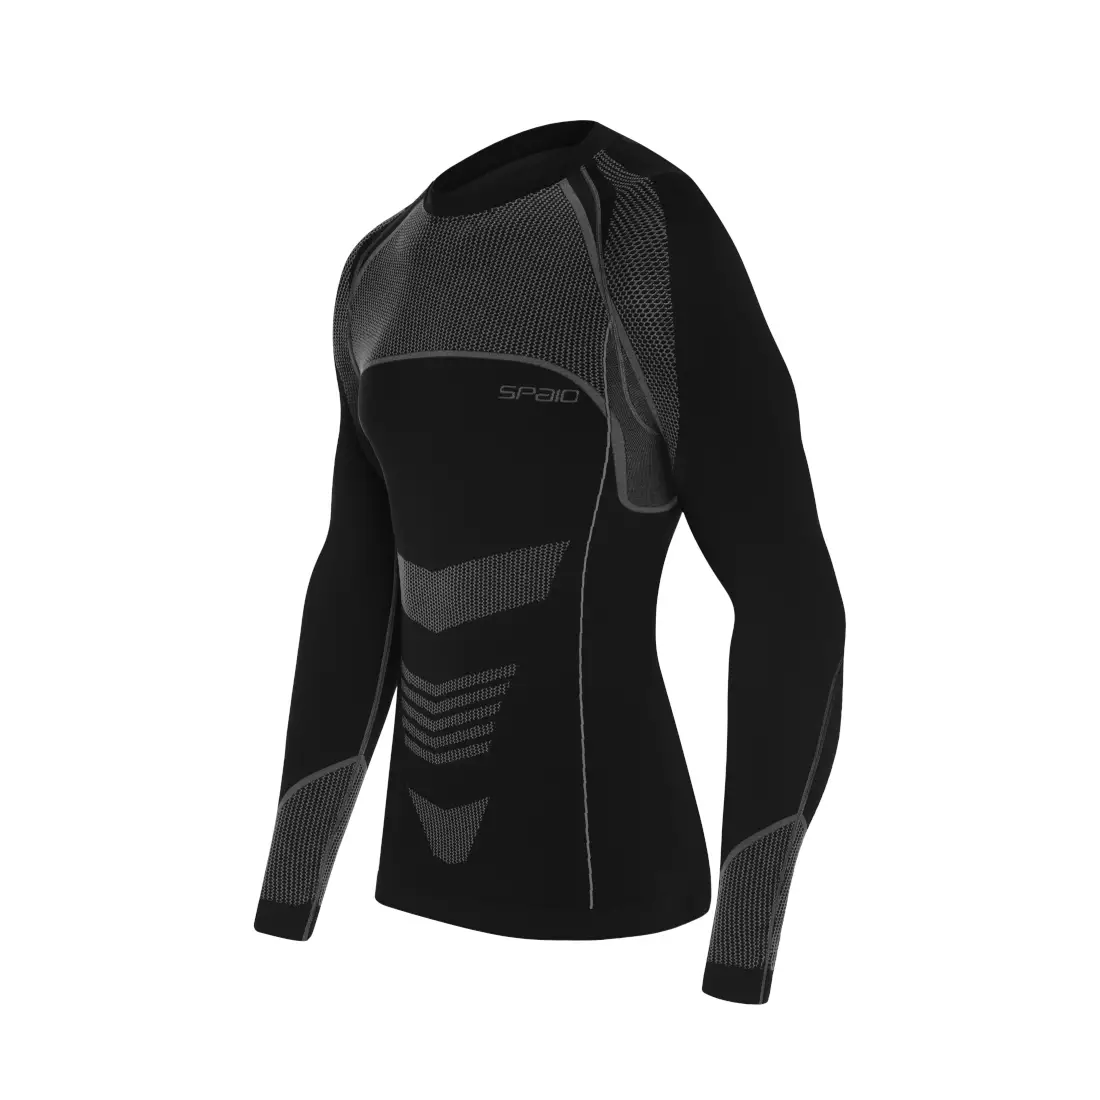 SPAIO termoaktívne prádlo, pánske tričko THERMO-EVO čierno-šedé